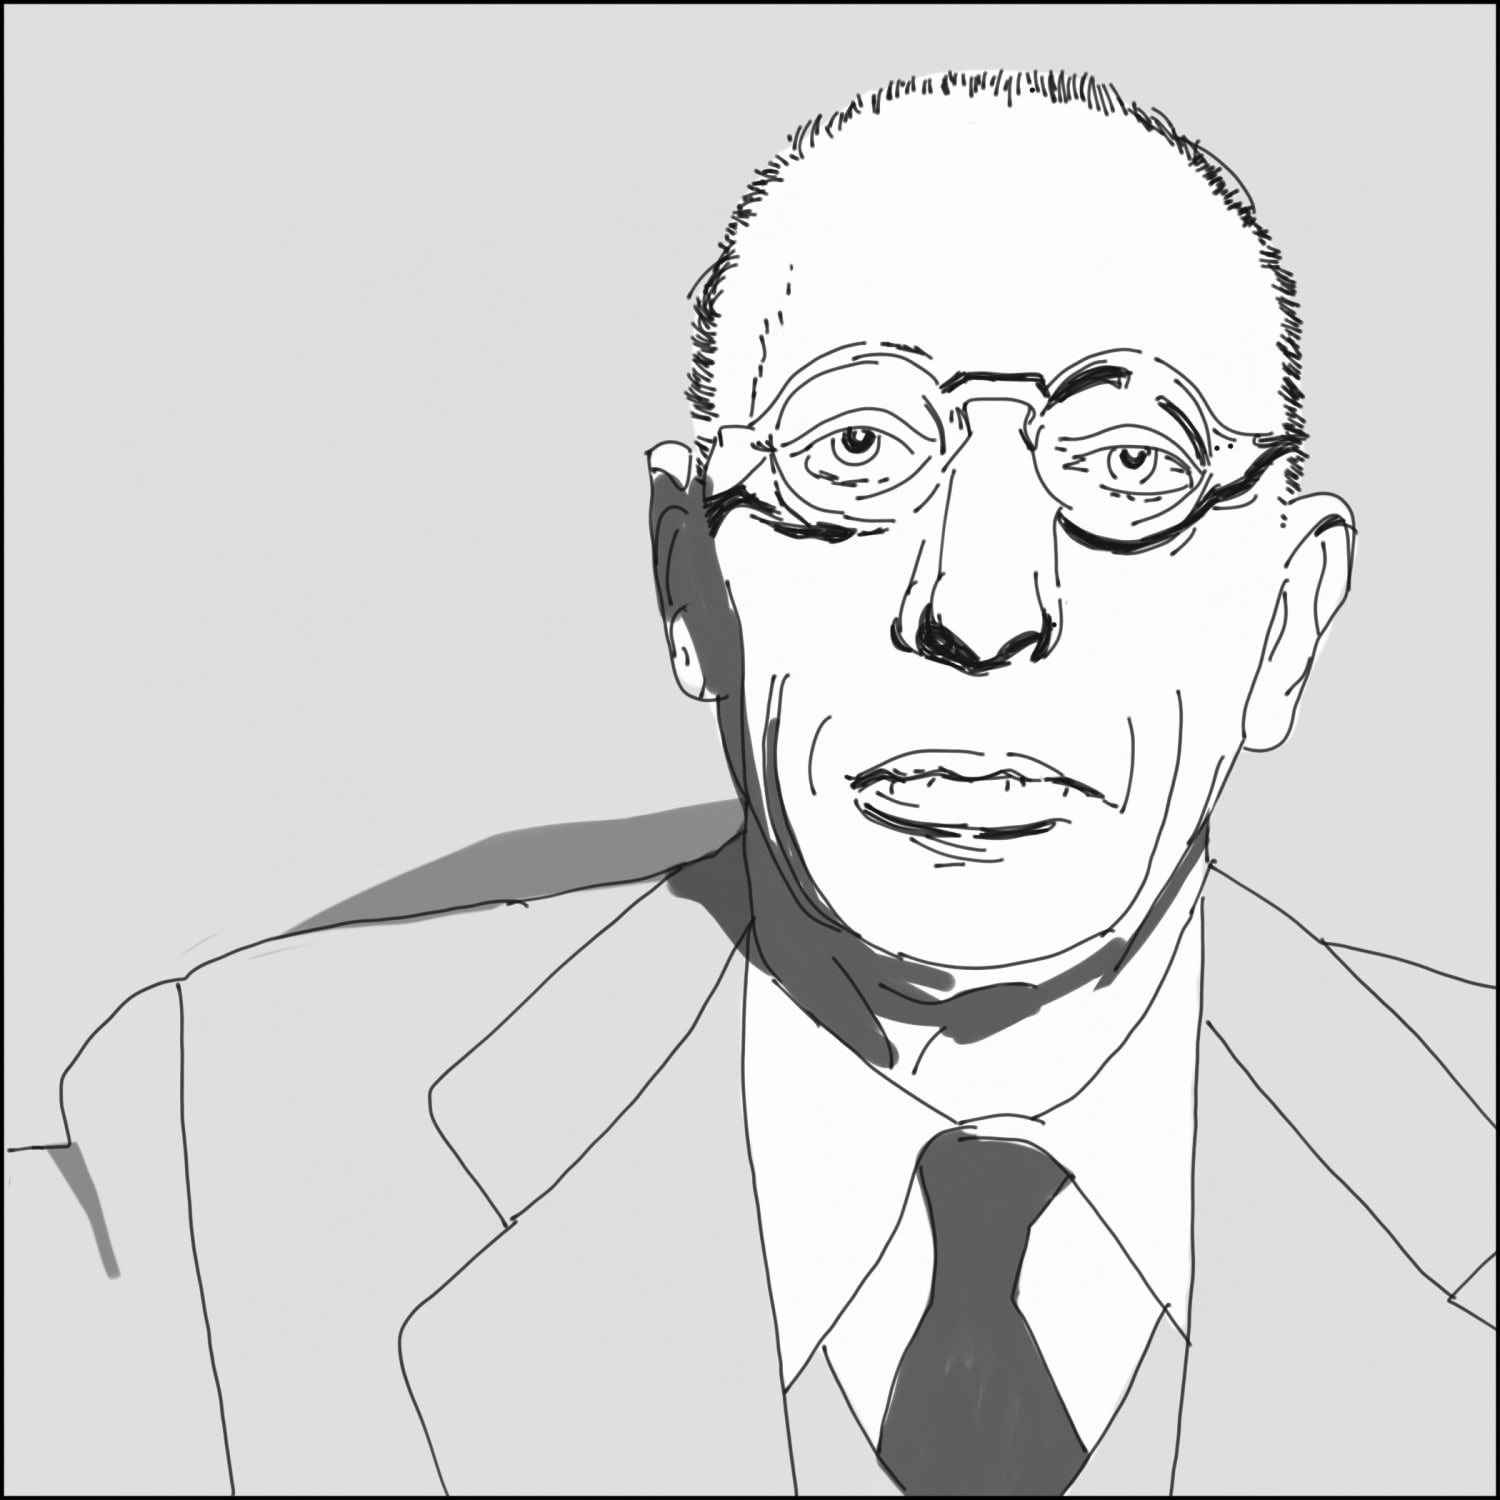 I drew a sketch of Igor Stravinsky